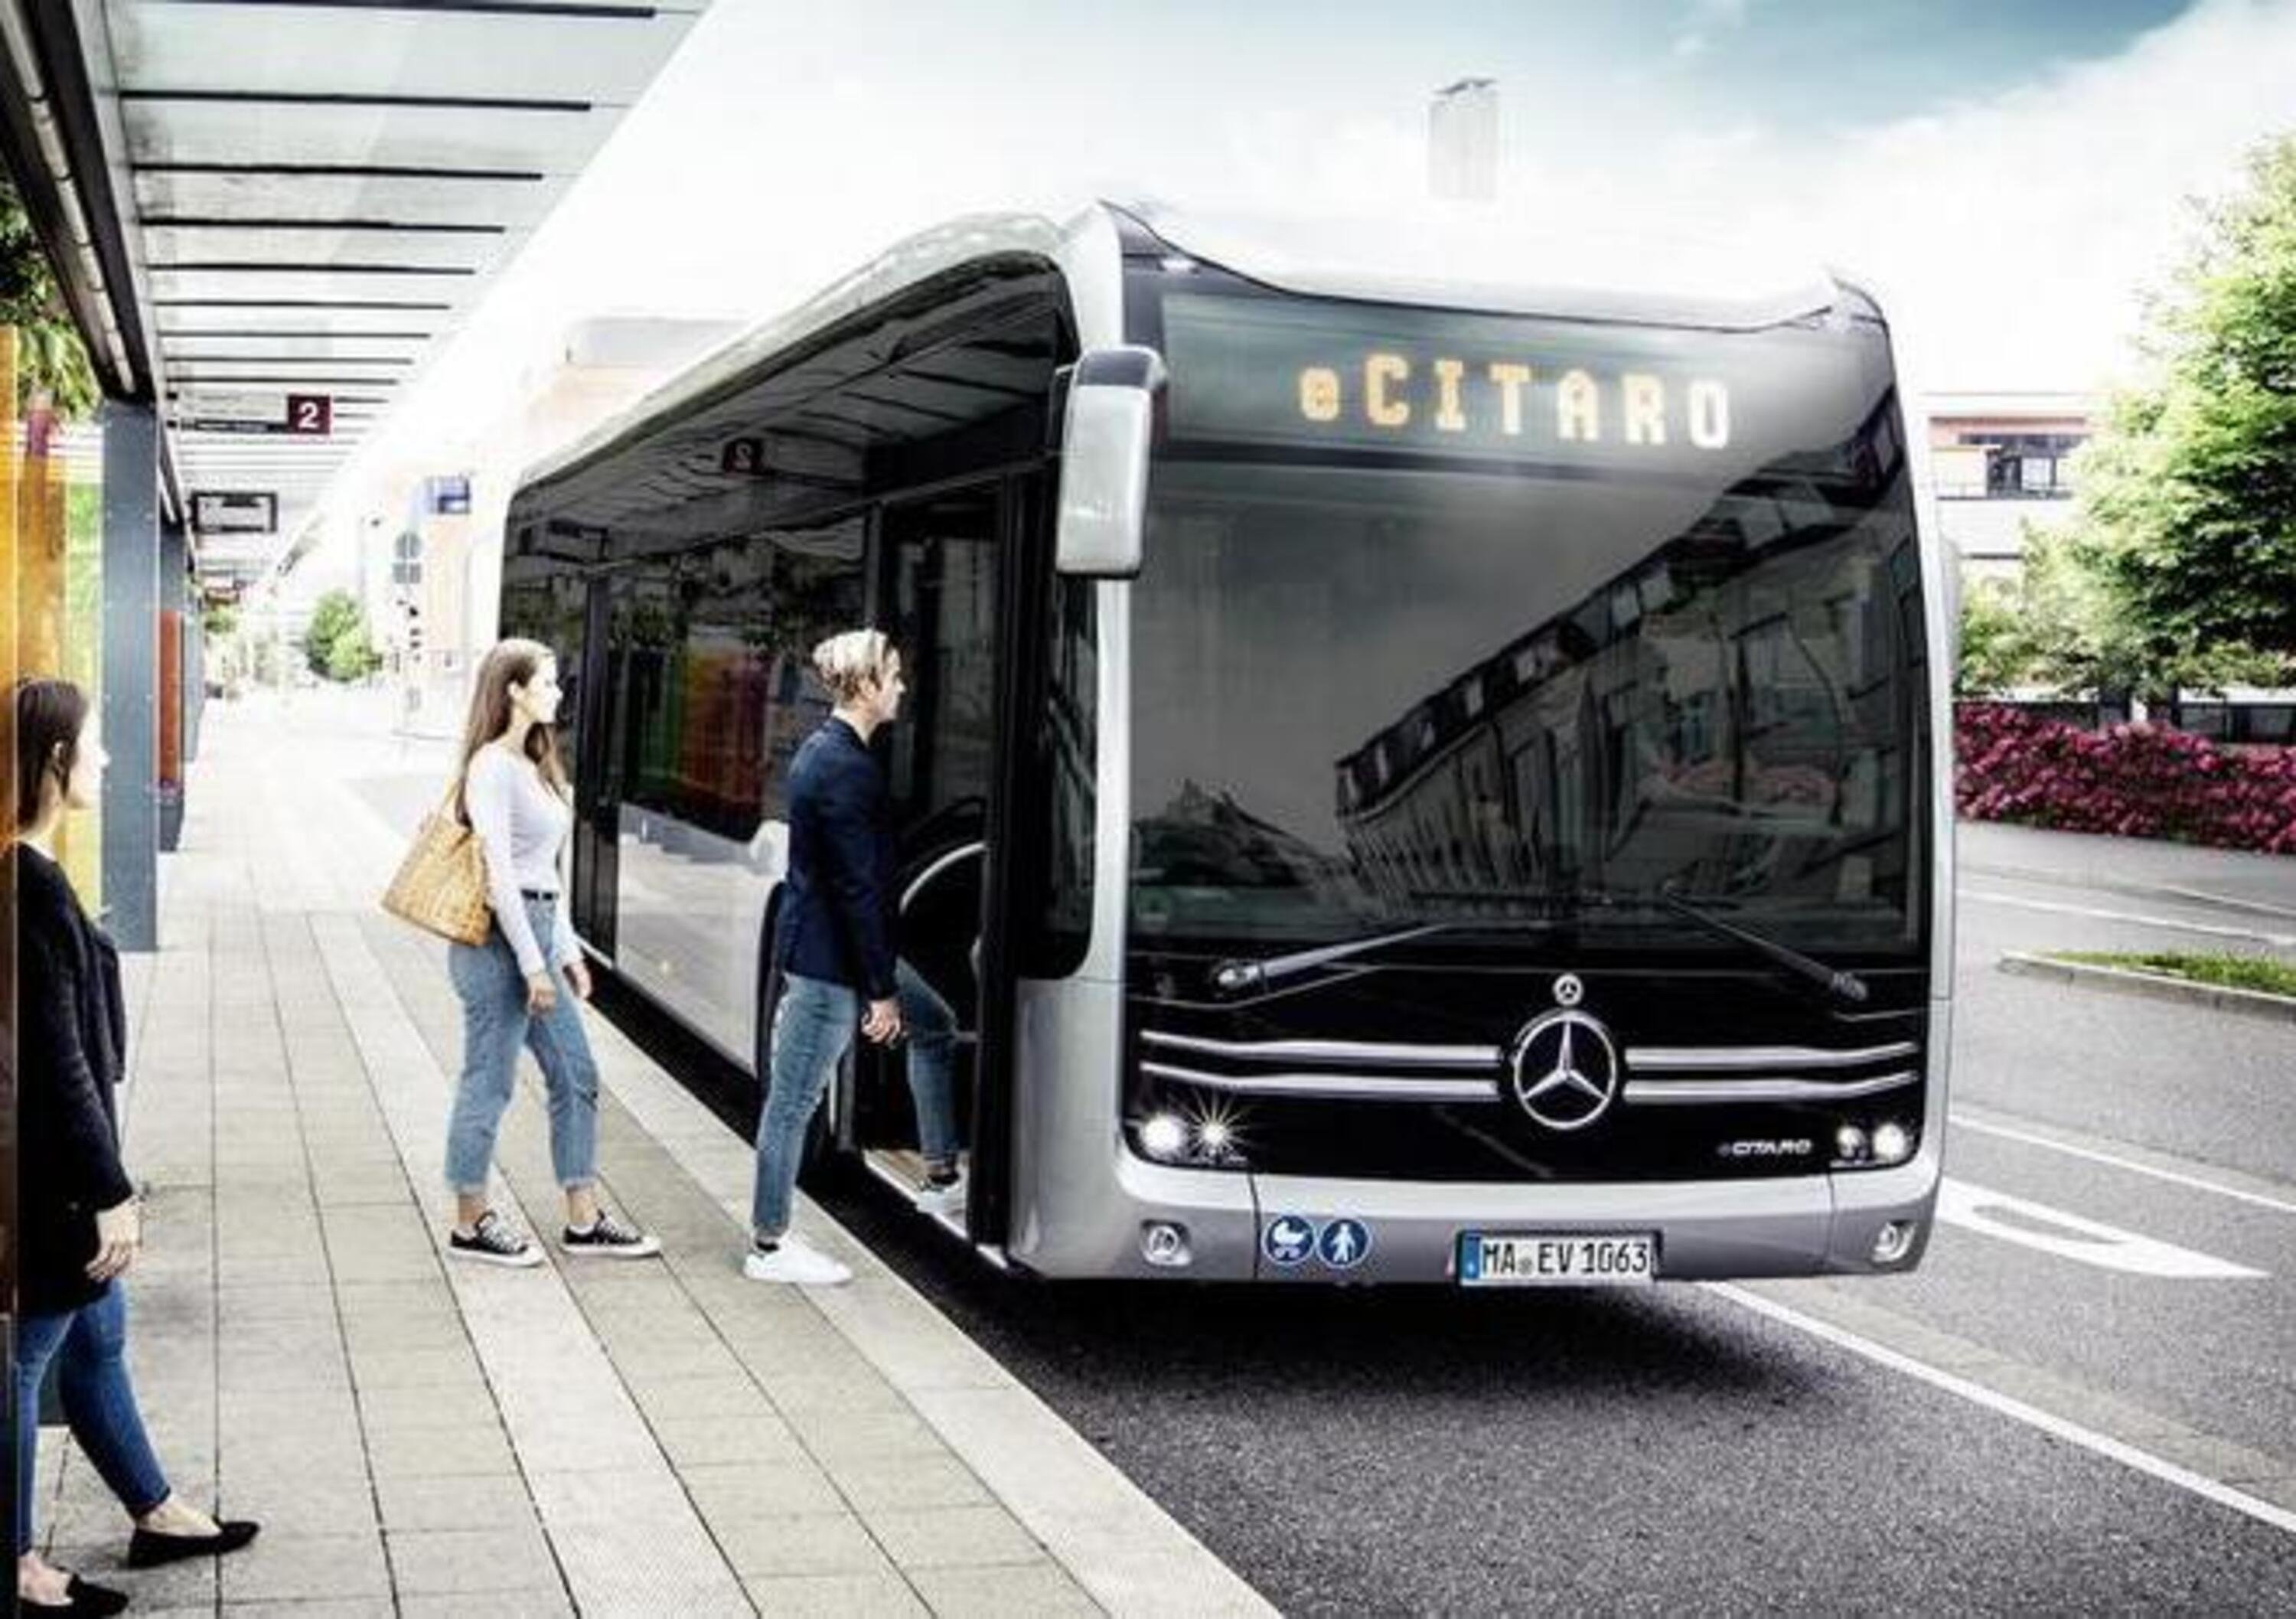 Mercedes eCitaro, il bus elettrico pronto alla produzione